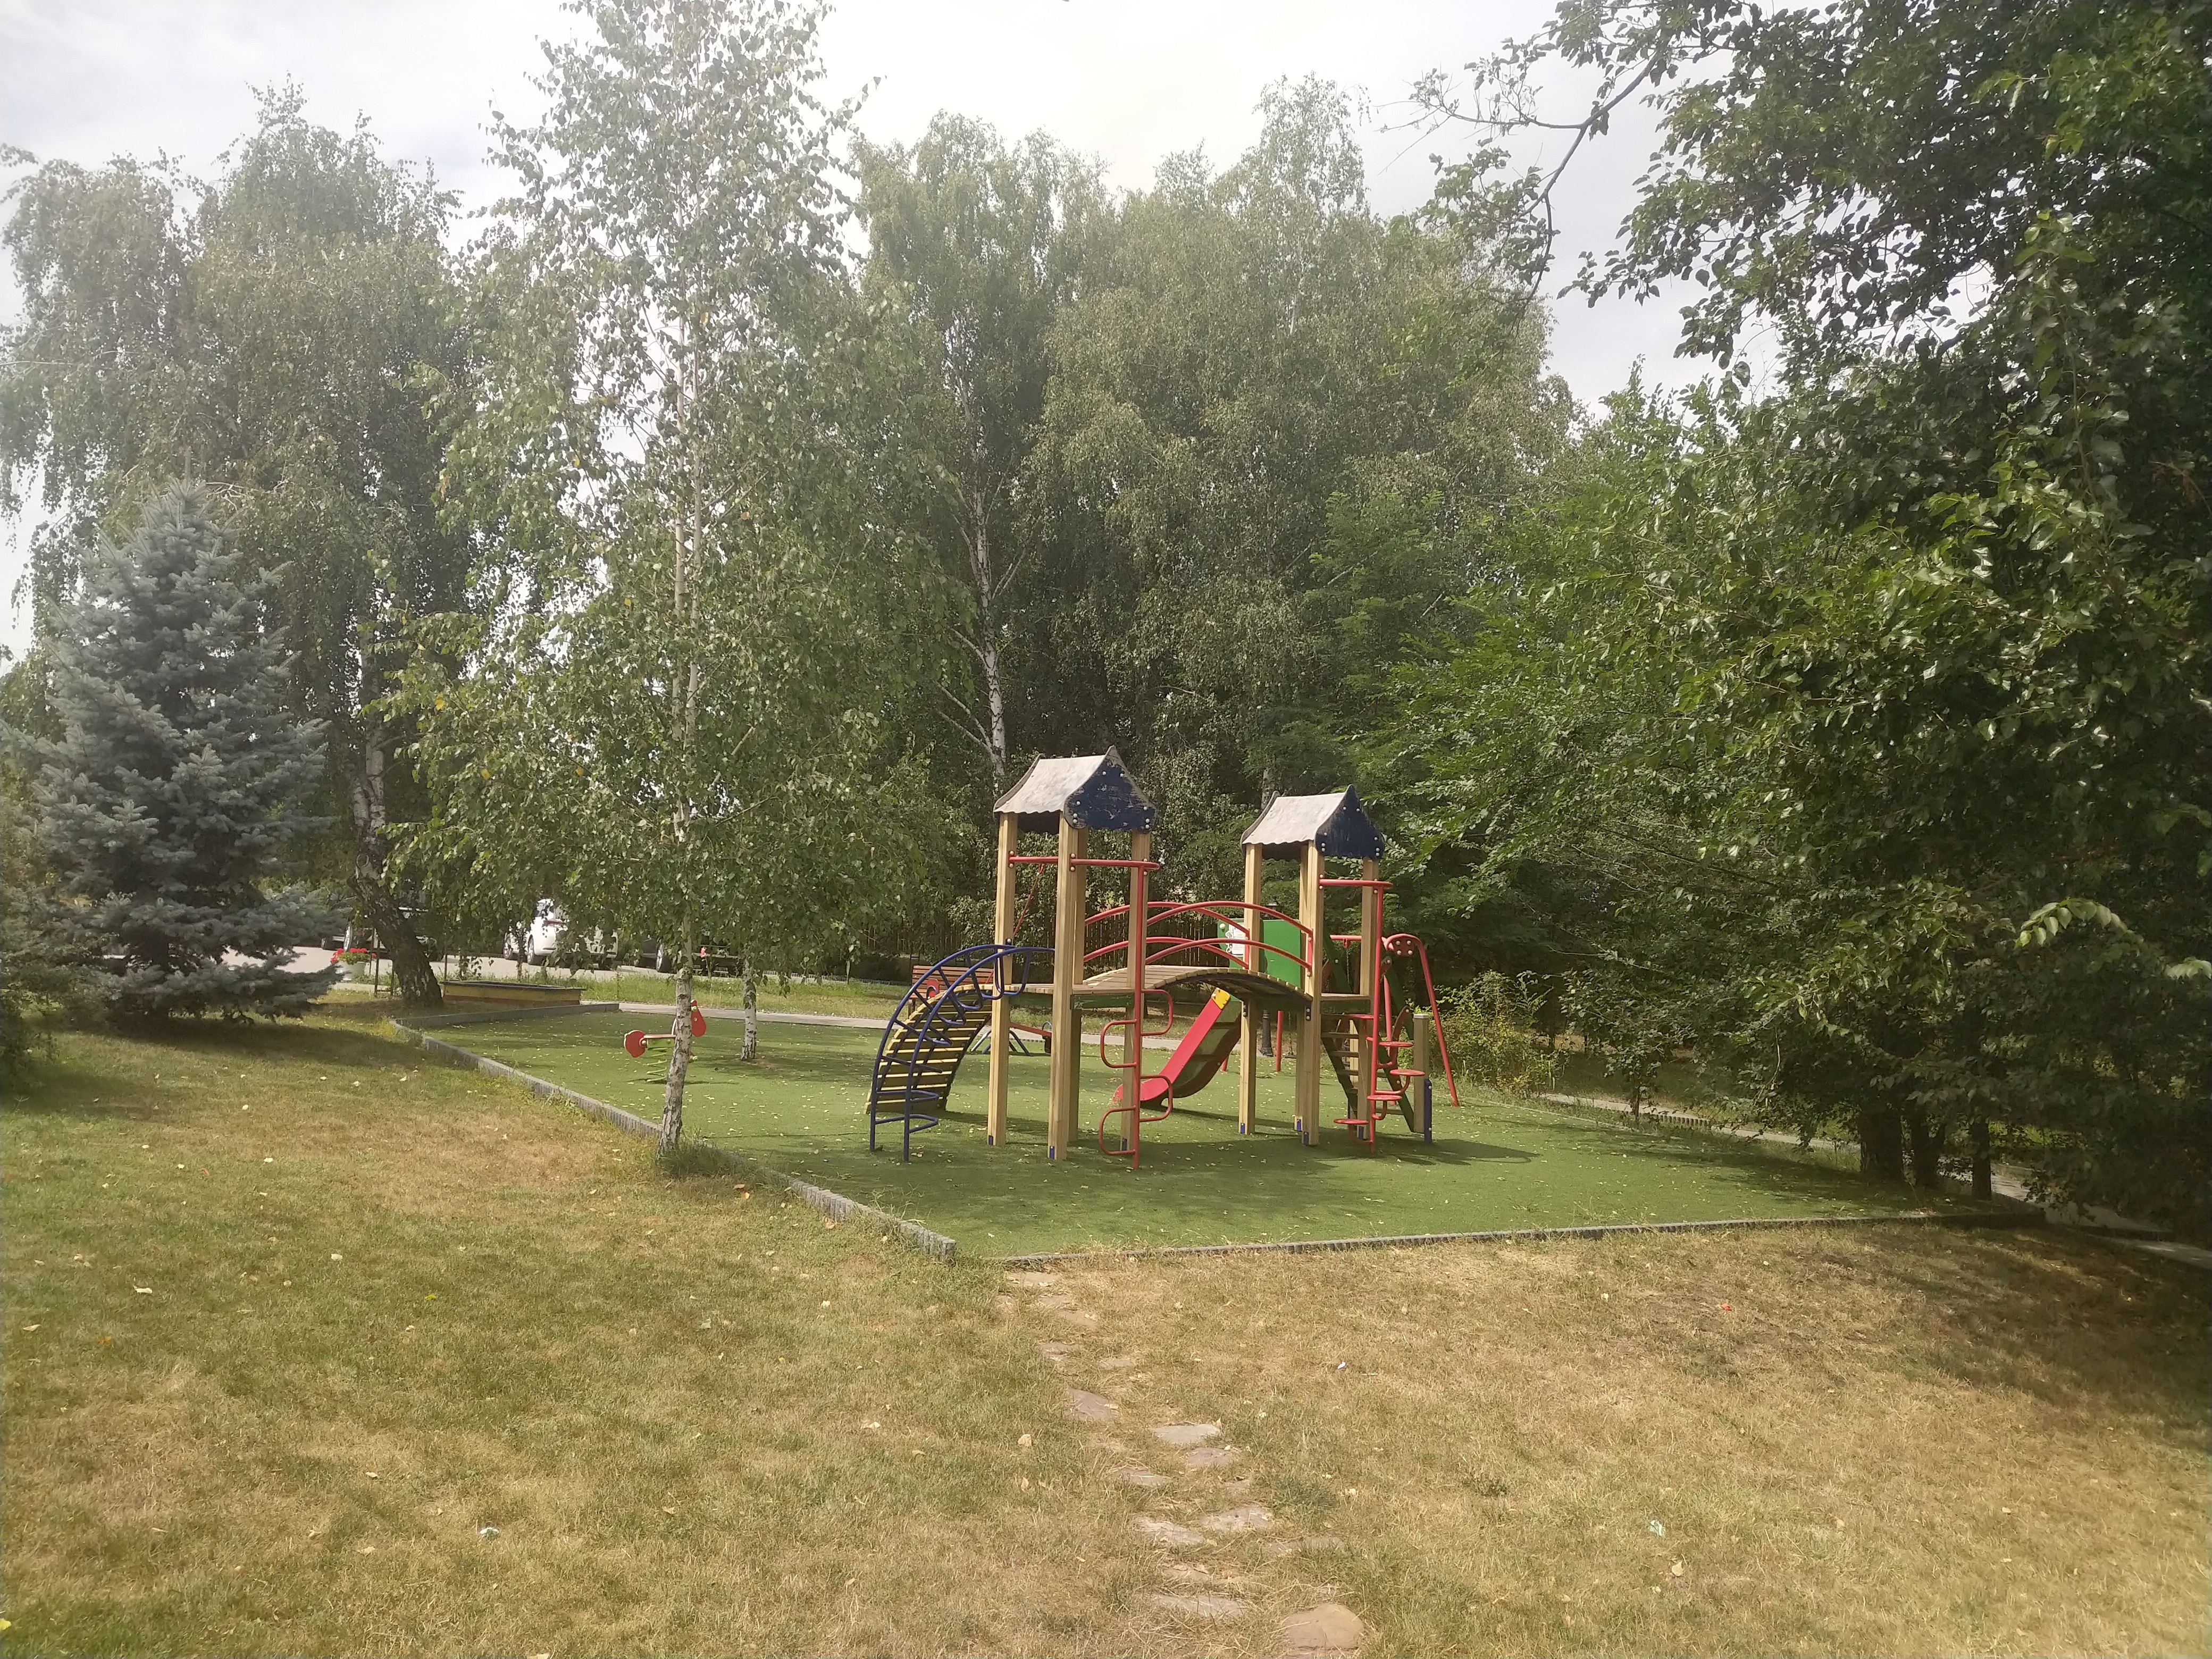 MD, Район Criuleni, Satul Magdacesti, Teren de joacă pentru copii la International Park